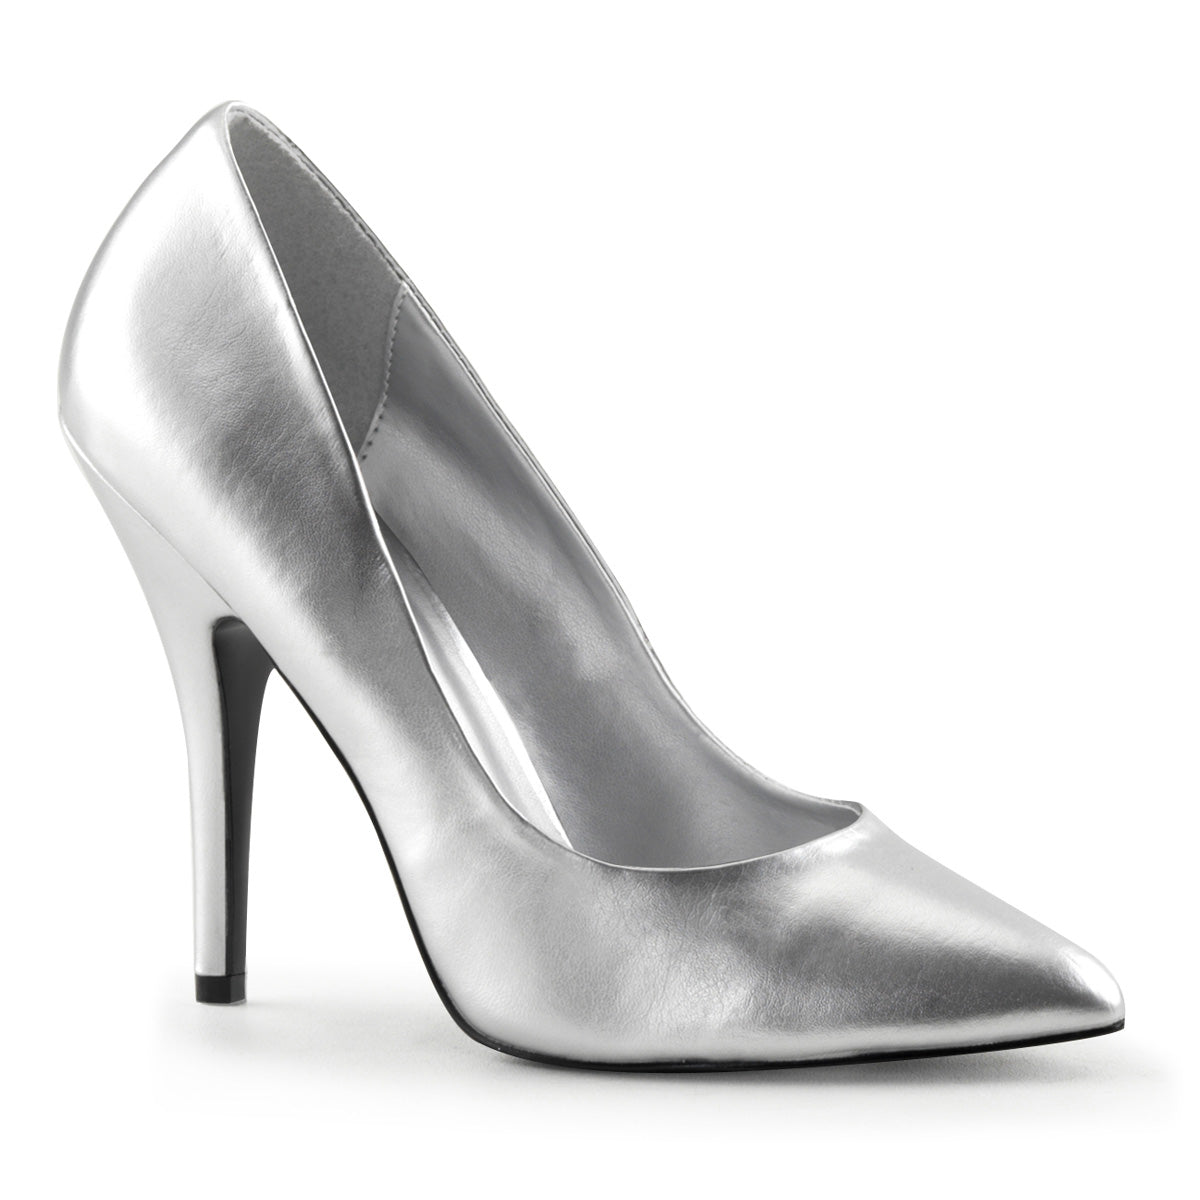 Seduce Silver Heels